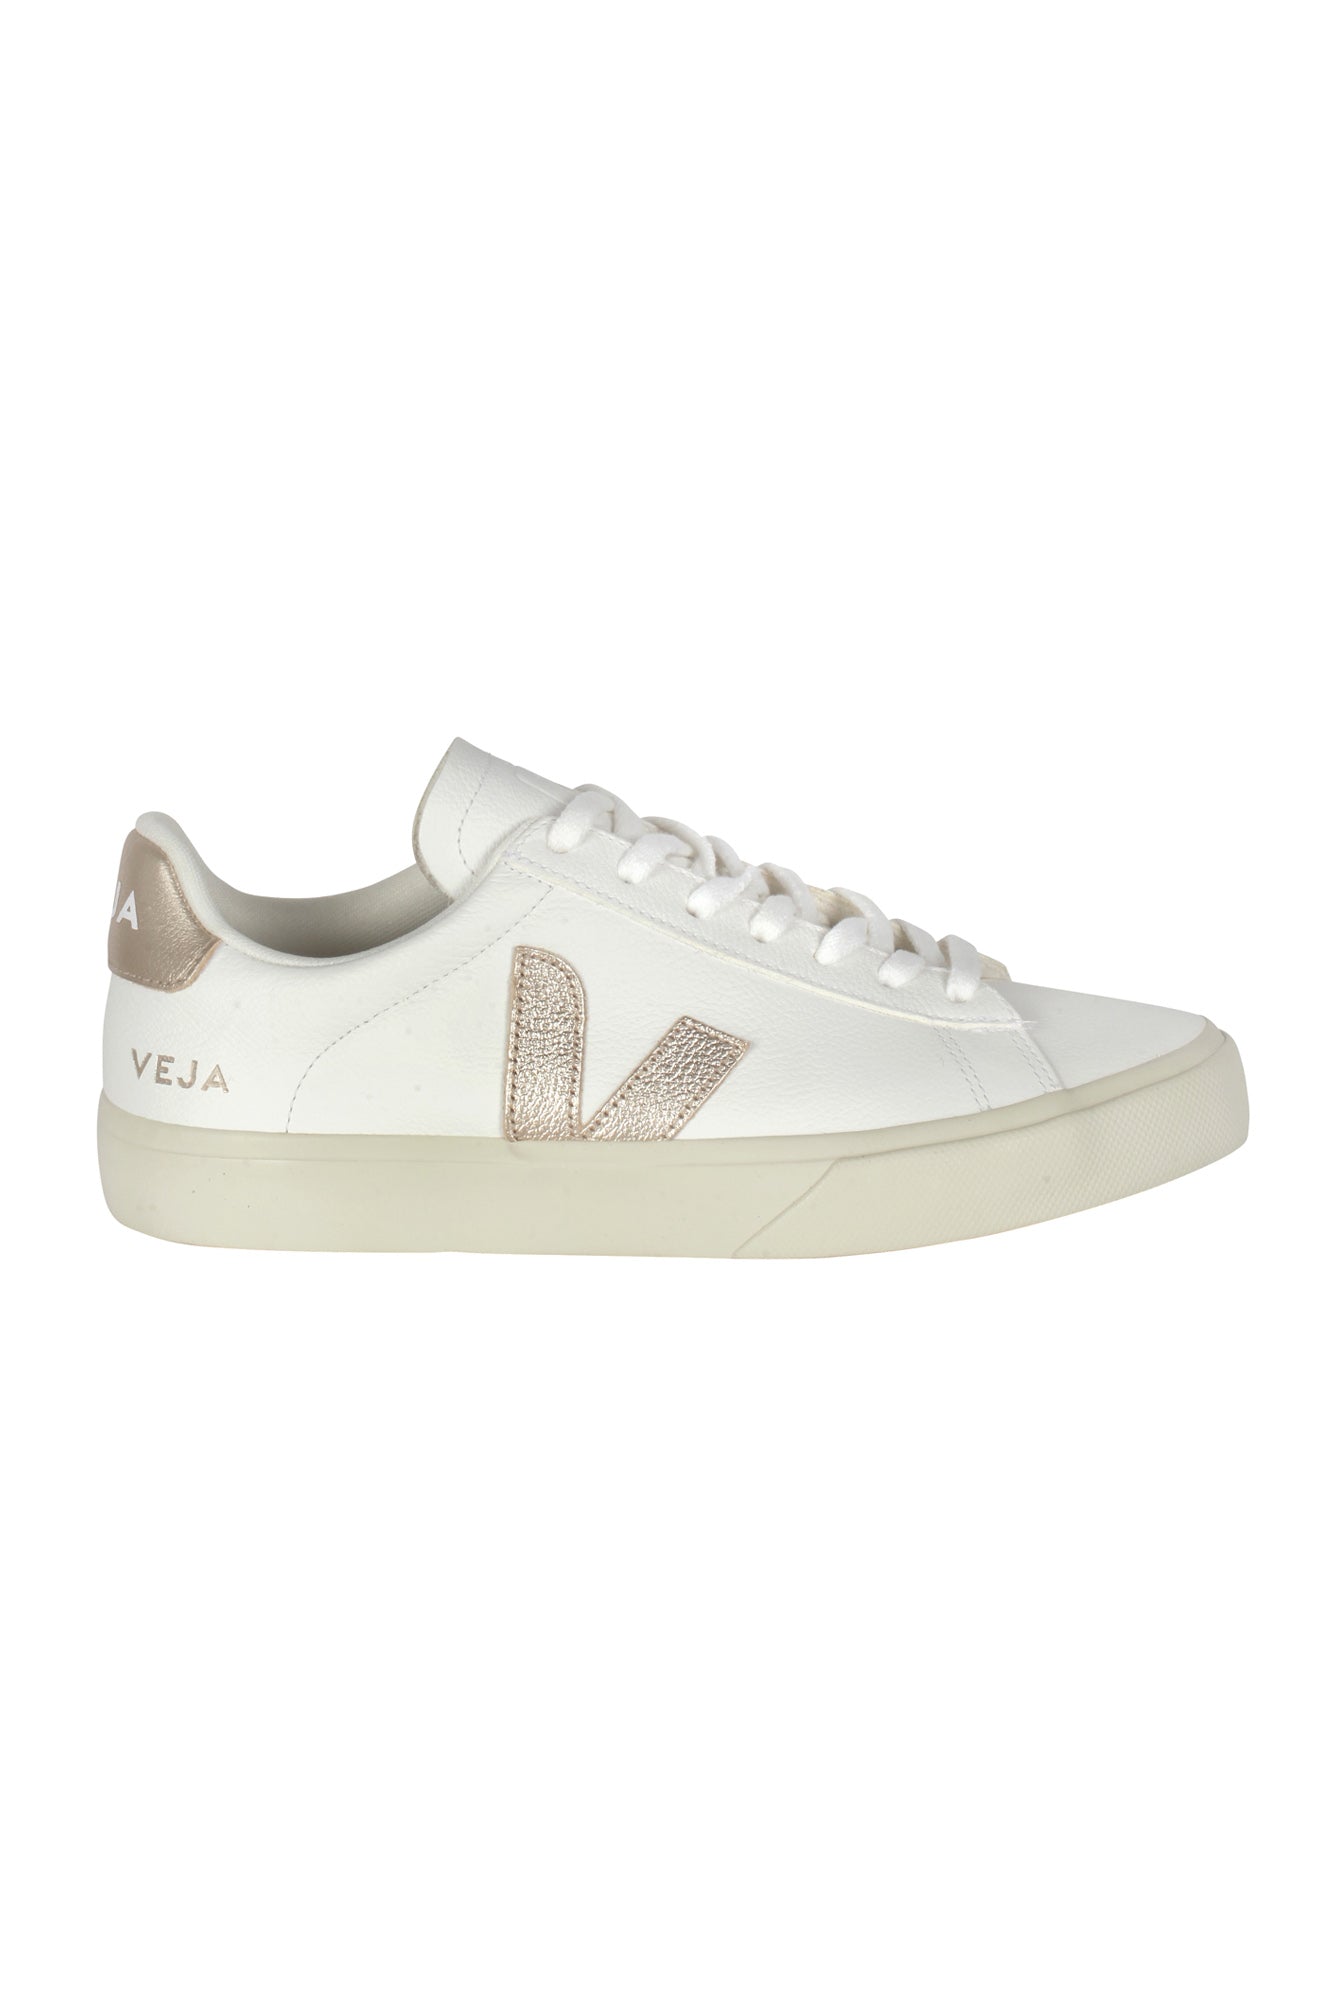 Veja - Sneakers - 430595 - Bianco/Platino